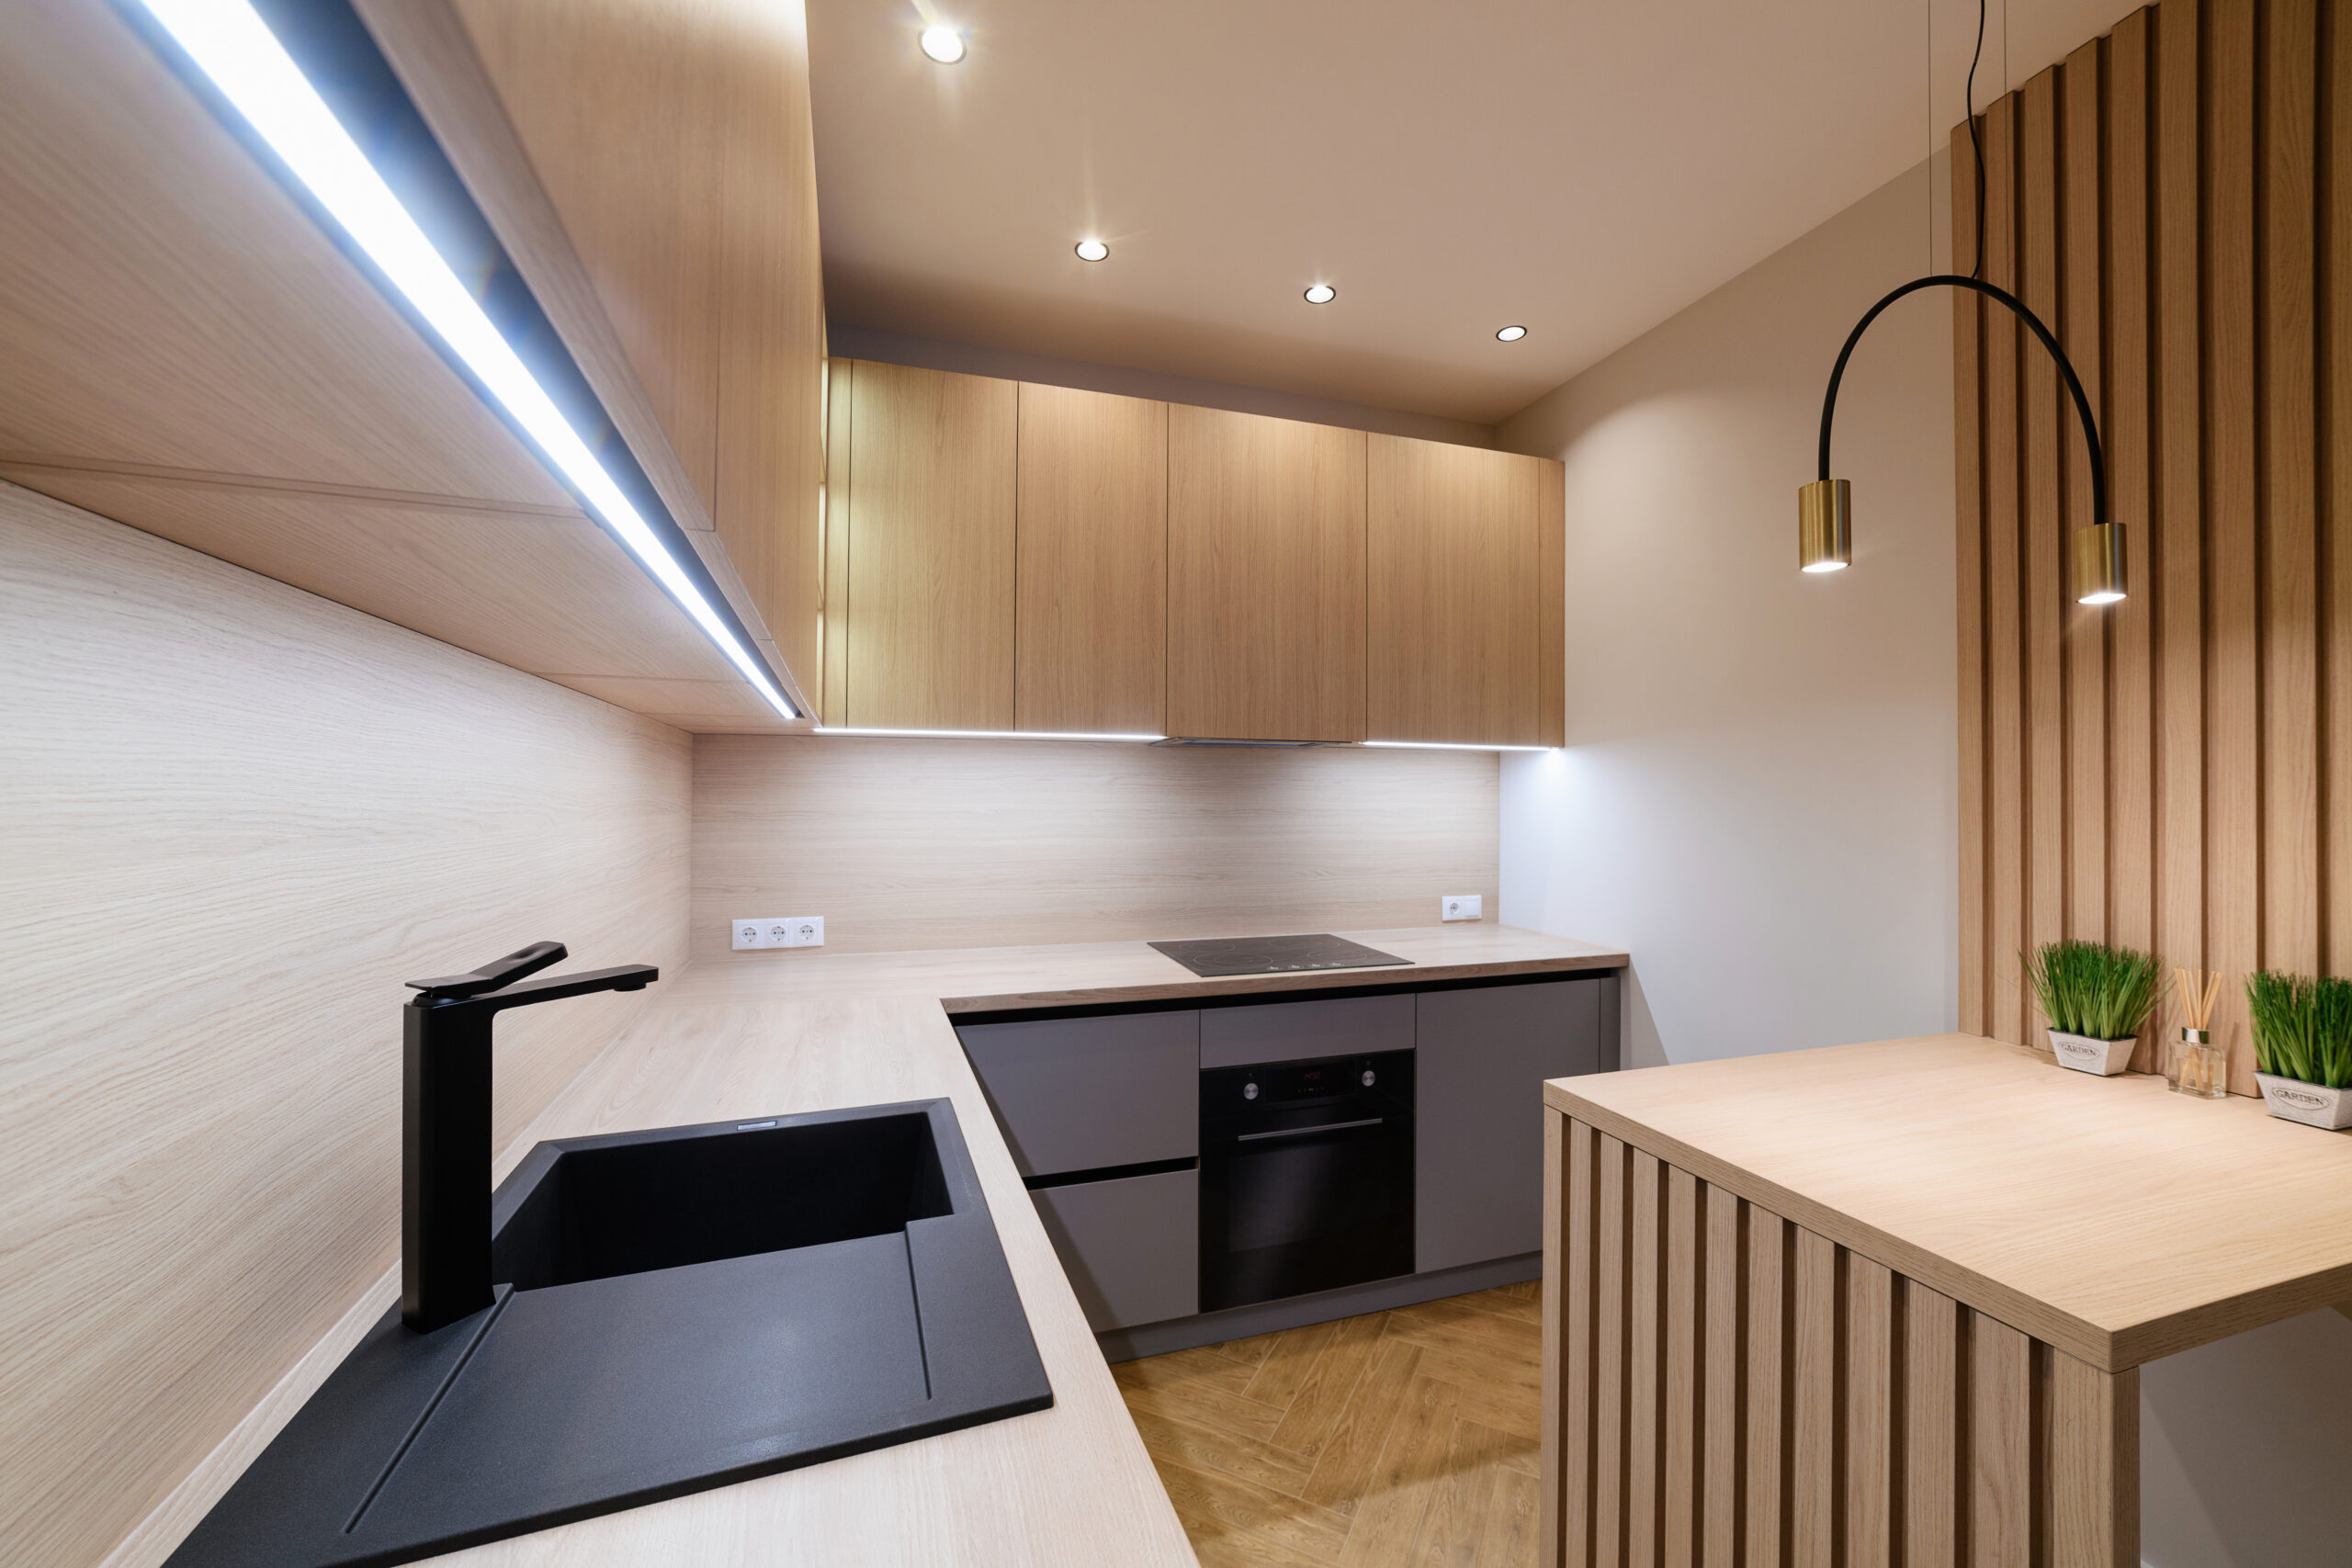 new modern kitchen in loft style